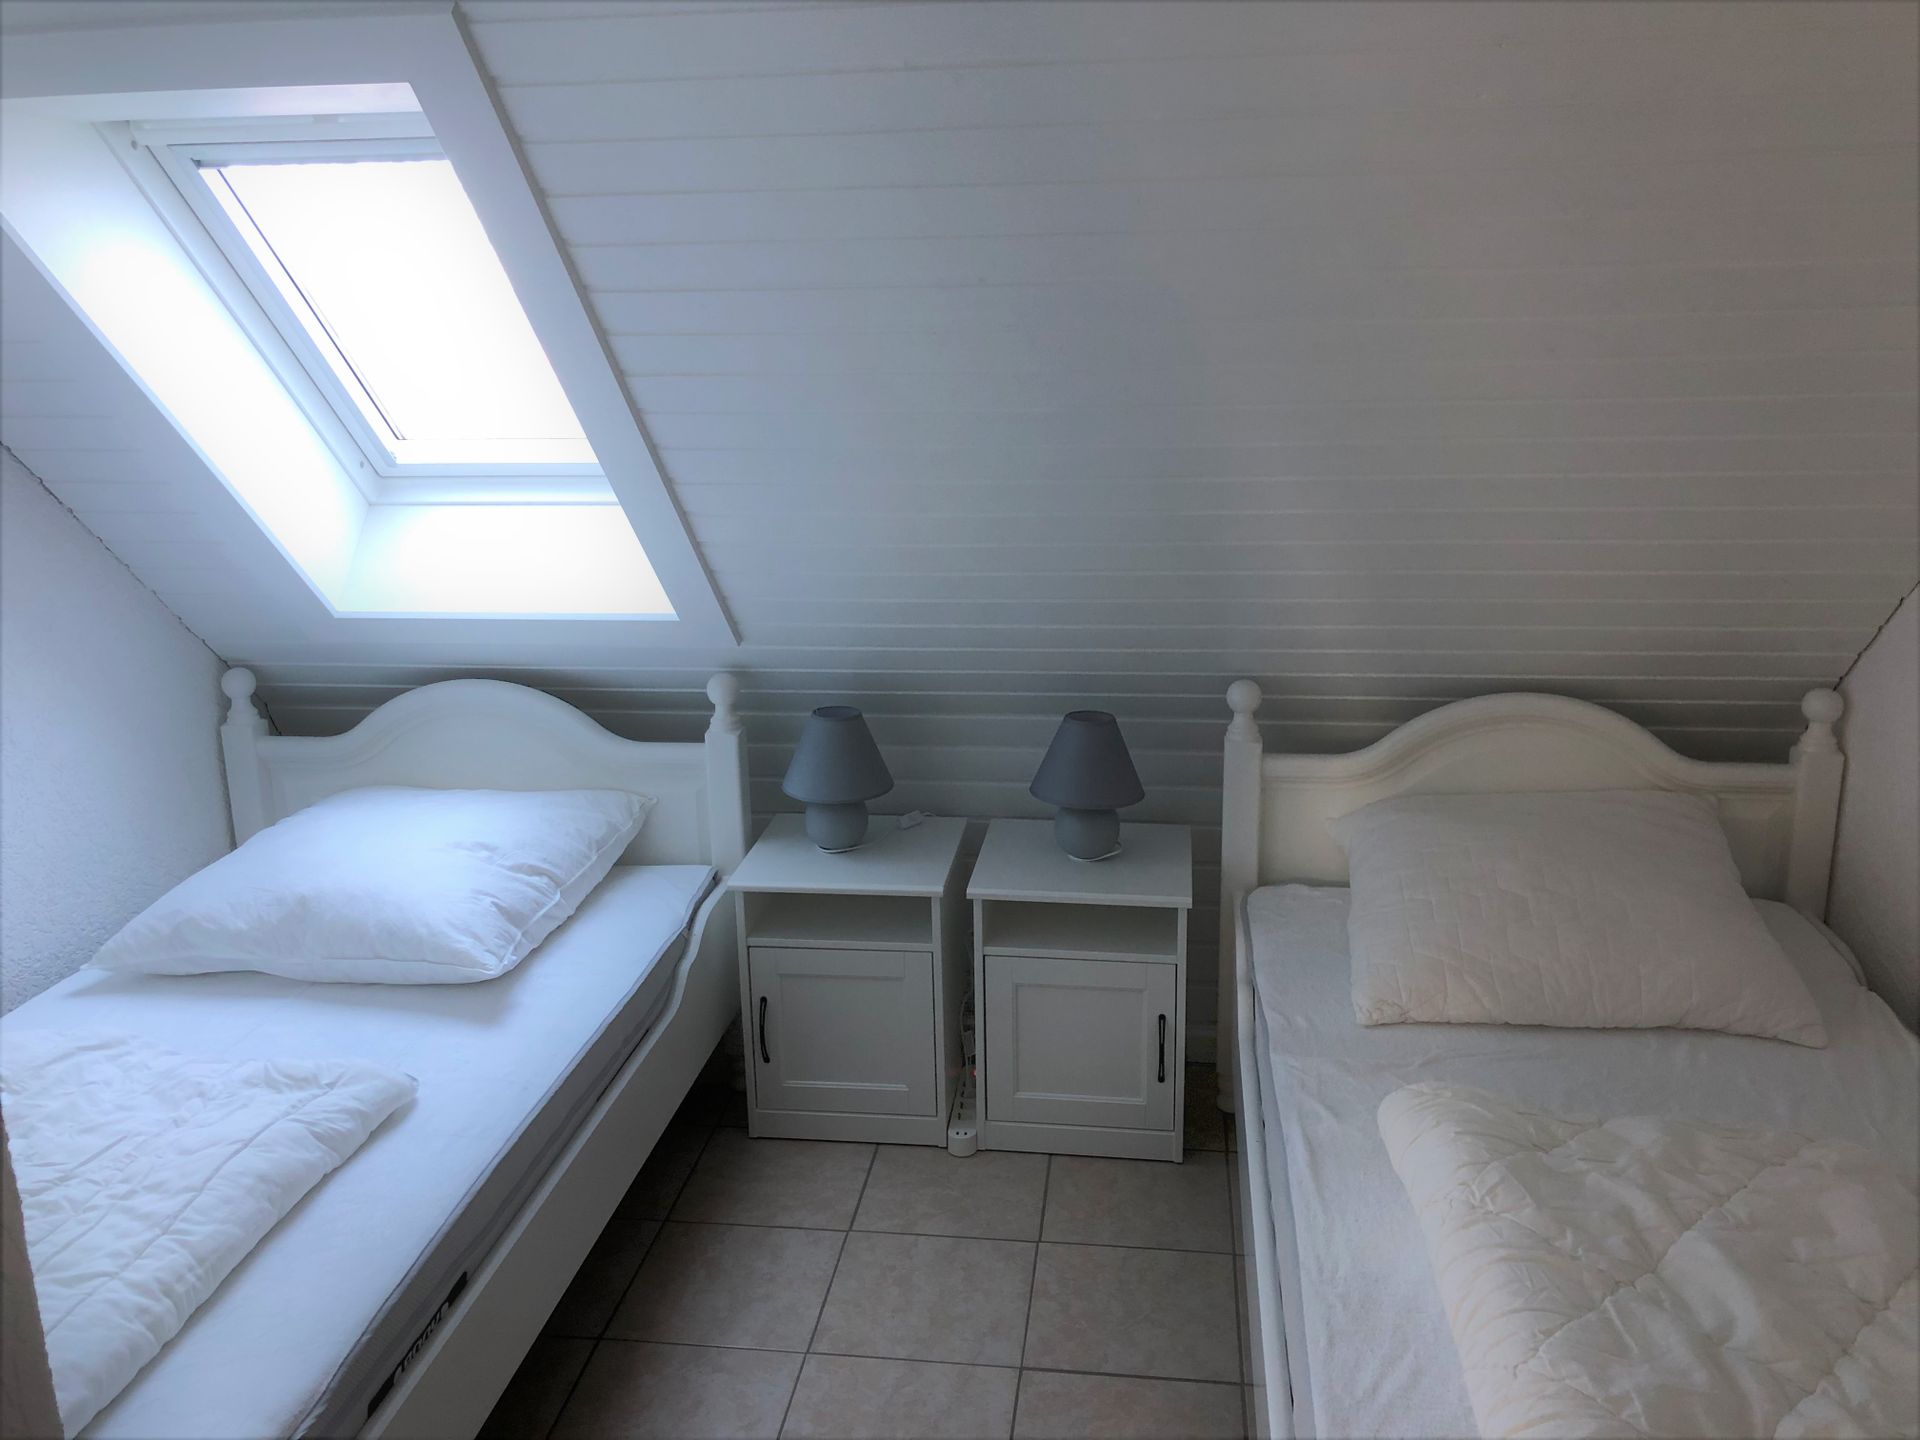 Schlafraum mit zwei Einzelbetten im Obergeschoss Ferienhaus Sandfoort 2f Nordsee Friedrichskoog